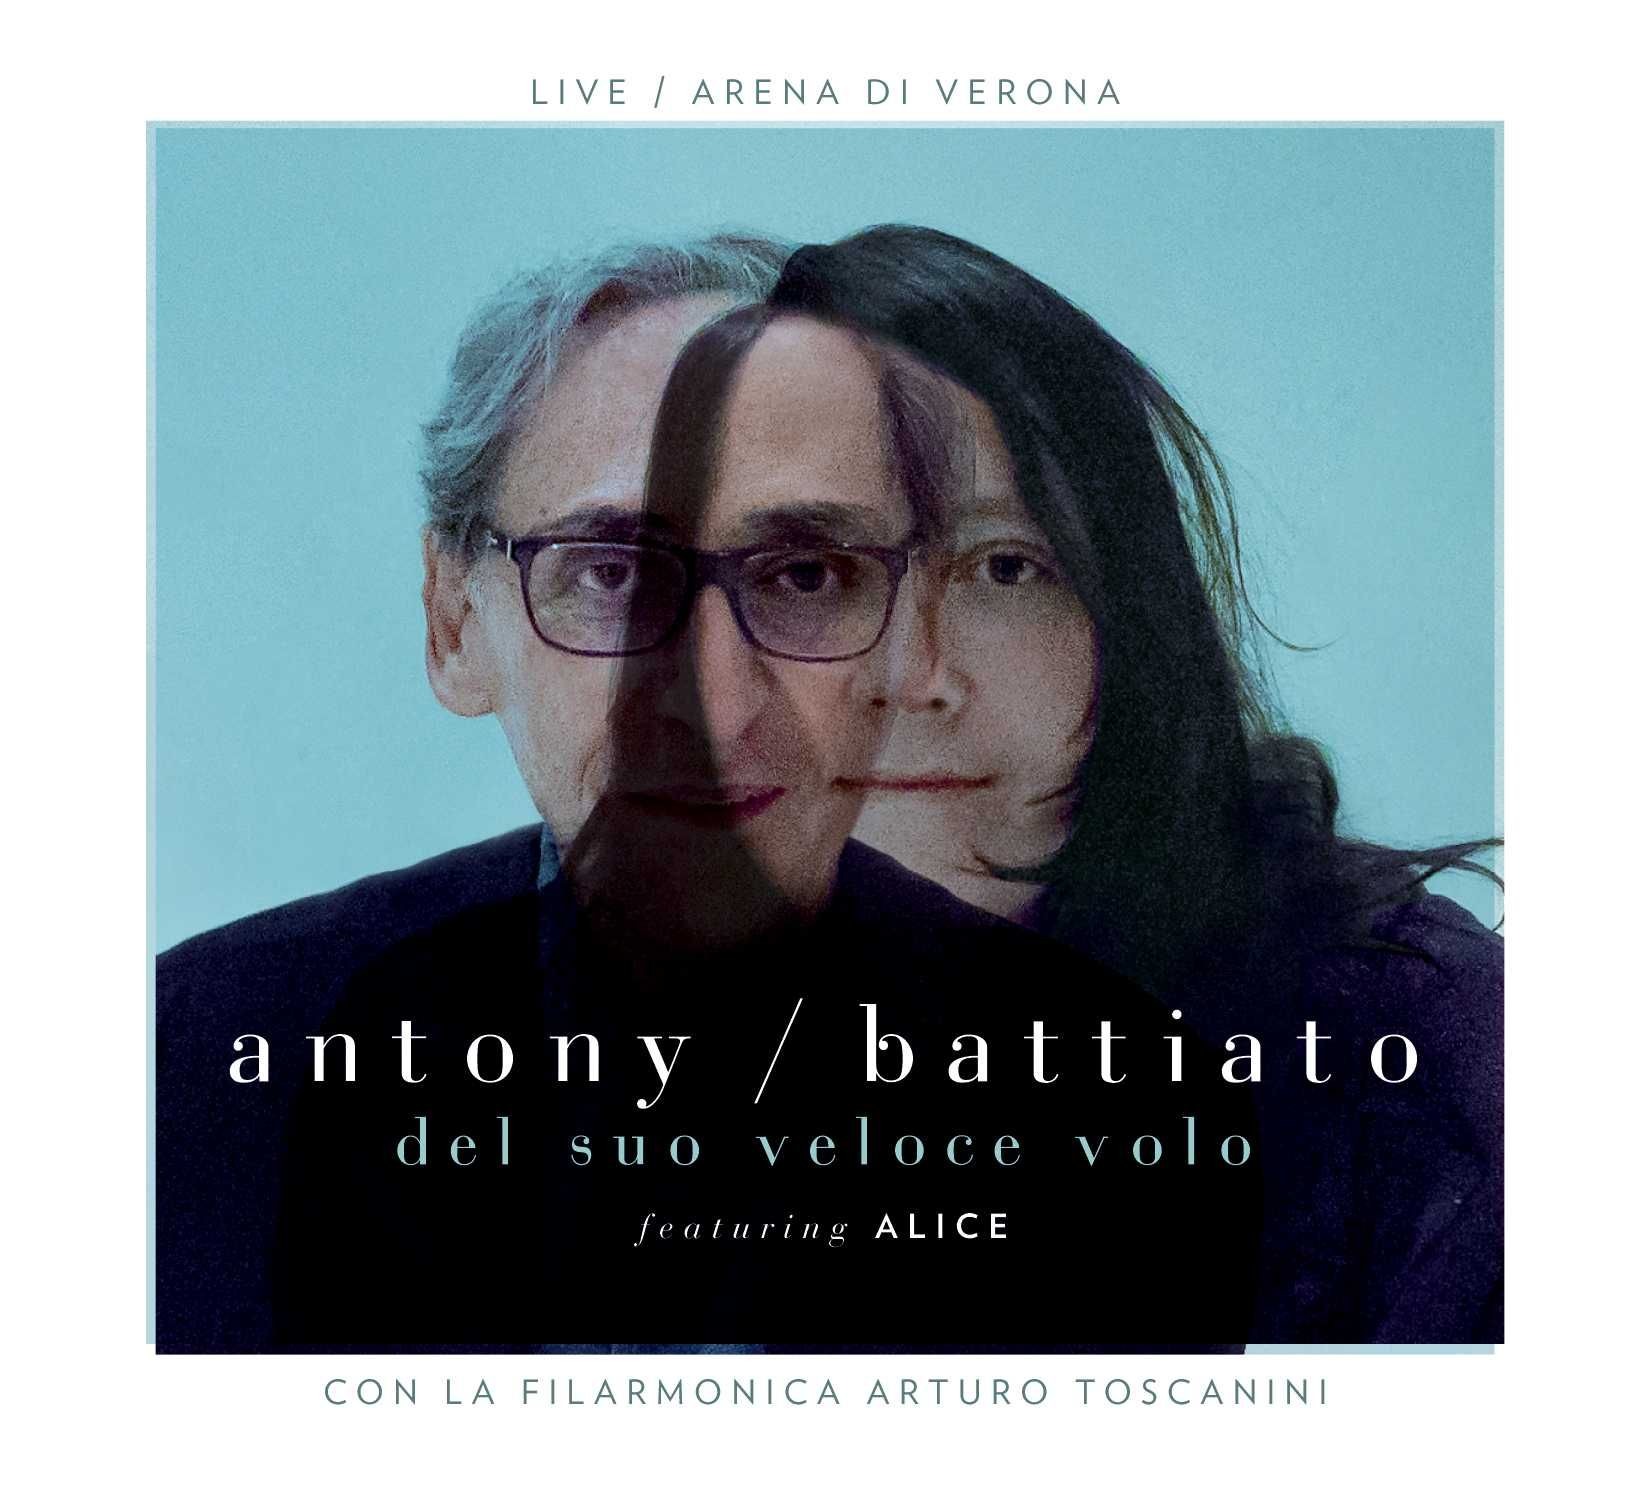 Vinile Antony / Battiato Featuring Alice - Del Suo Veloce Volo (Limited) (2 Lp) NUOVO SIGILLATO, EDIZIONE DEL 16/07/2021 SUBITO DISPONIBILE